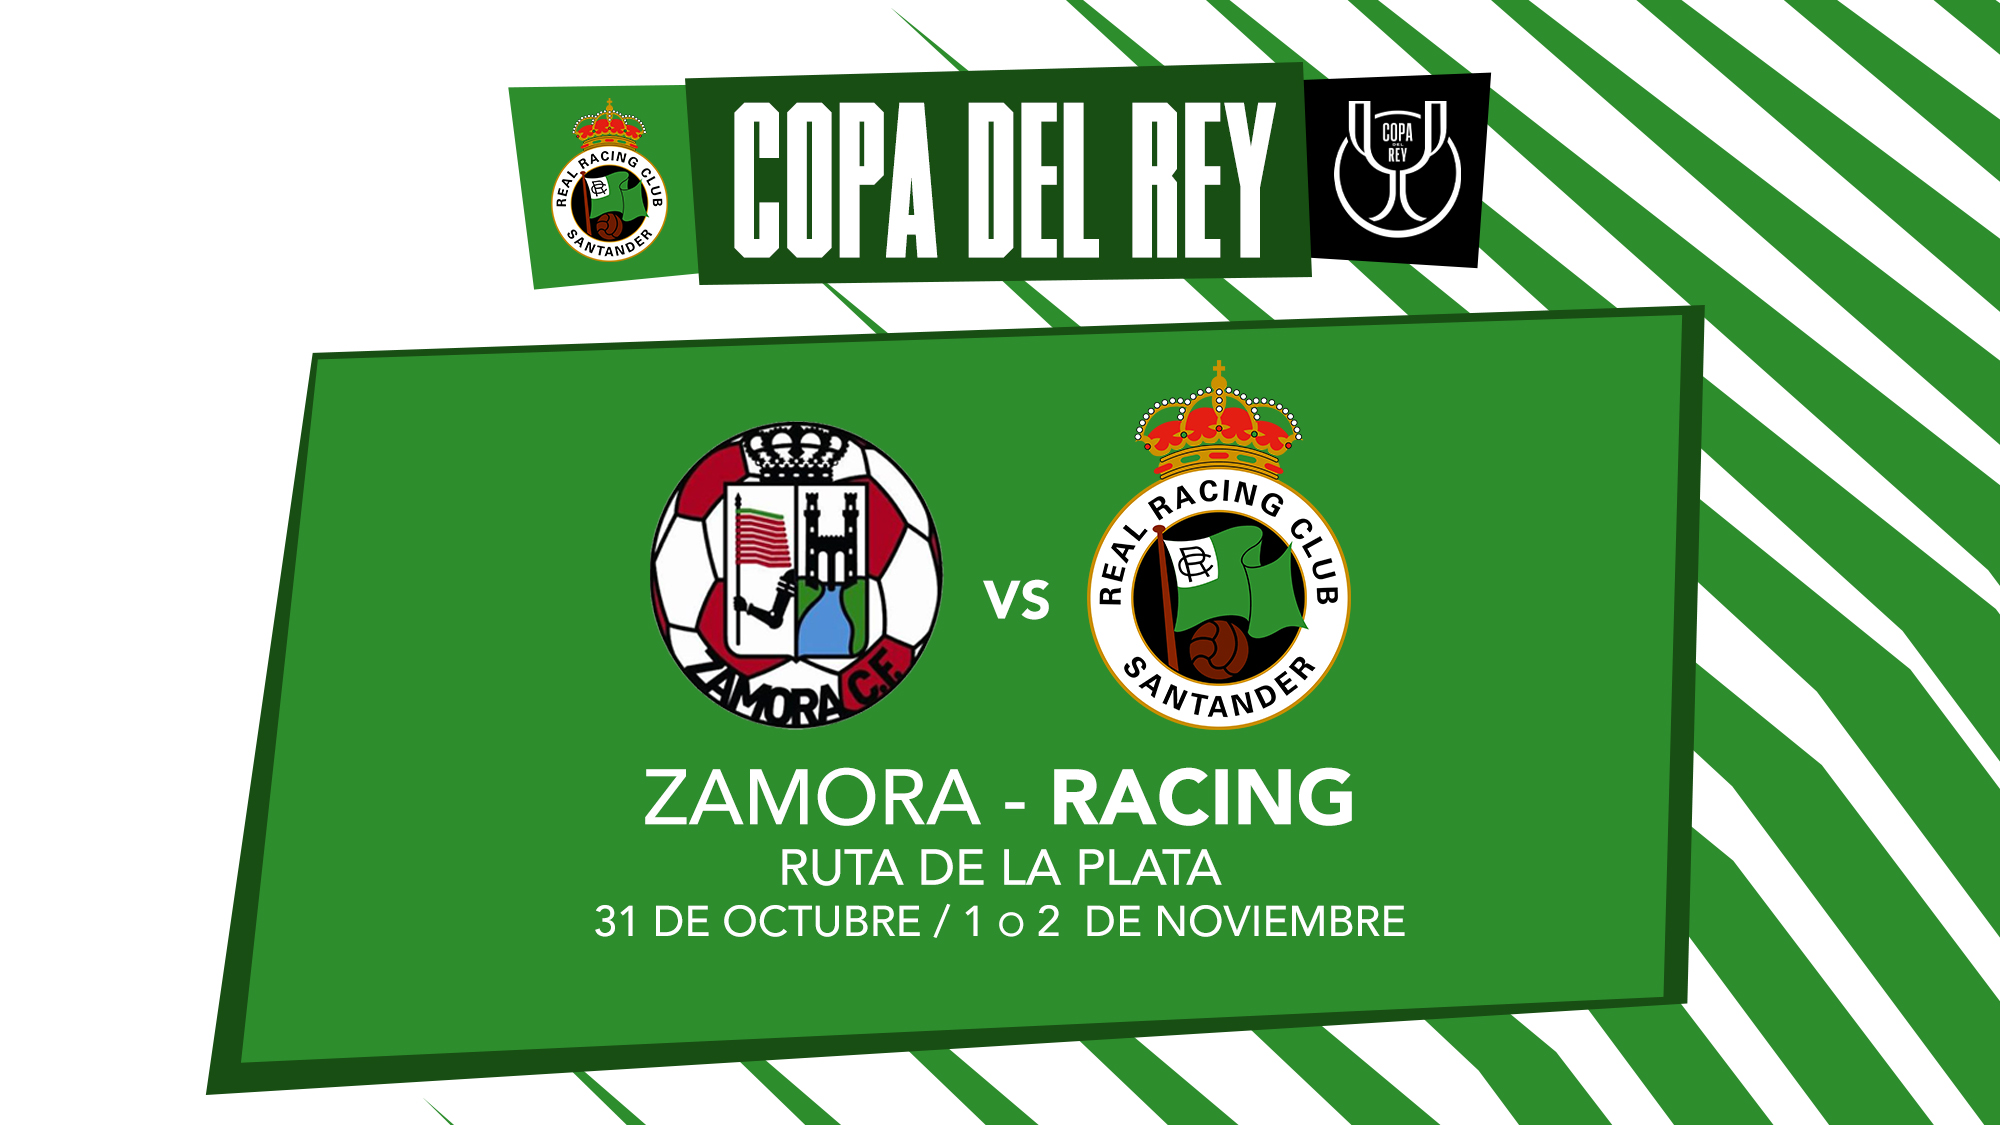 Zamora racing copa del rey